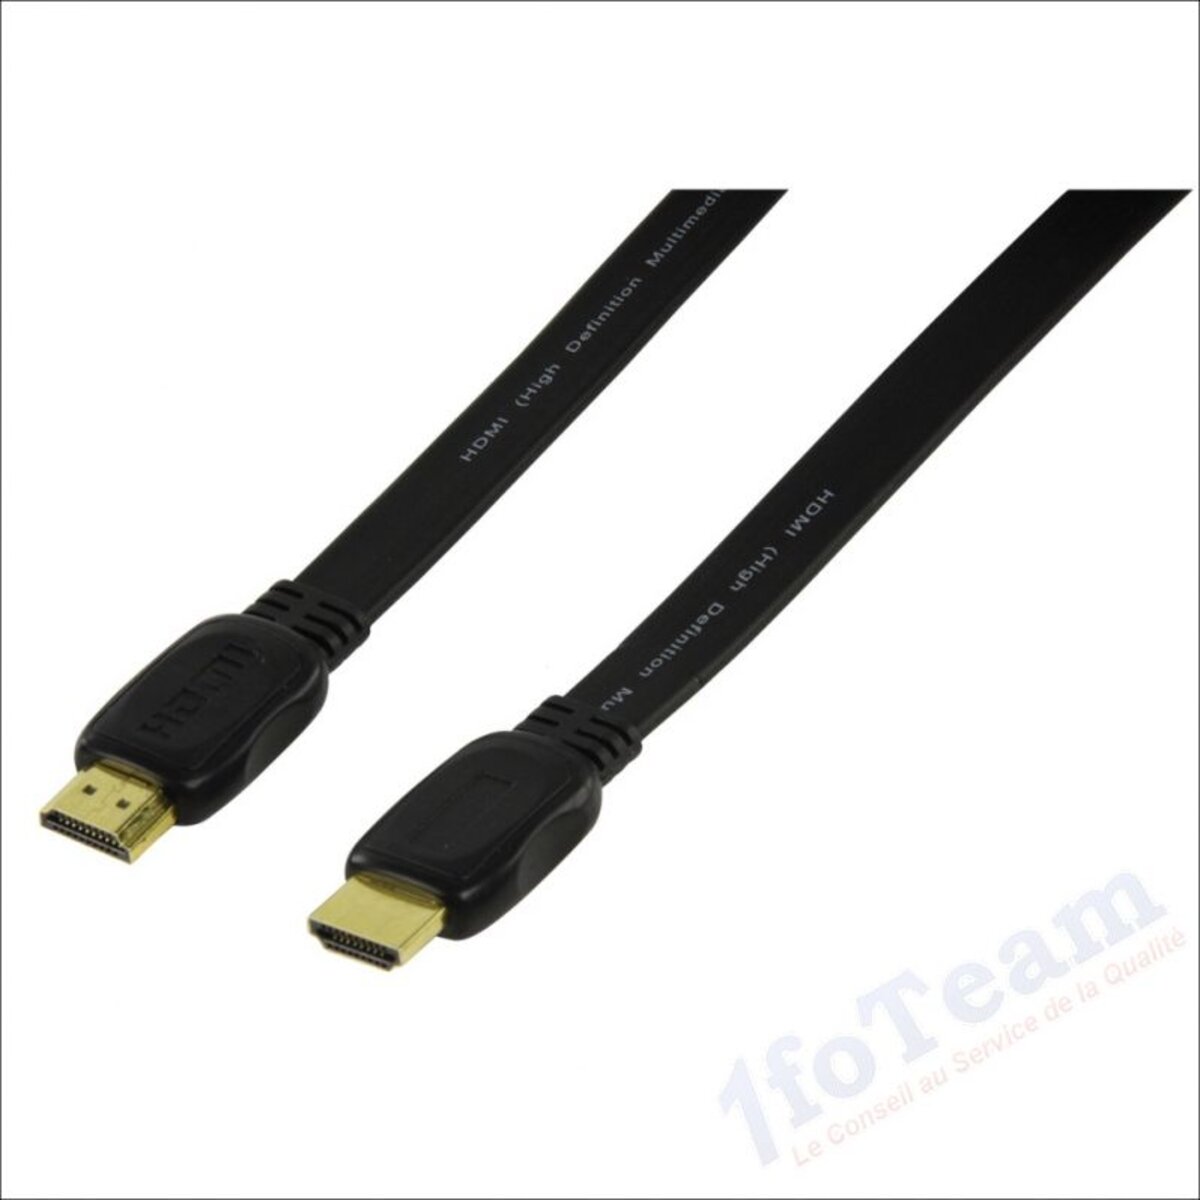 Cable HDMI 3m M/F (rallonge) - La Poste